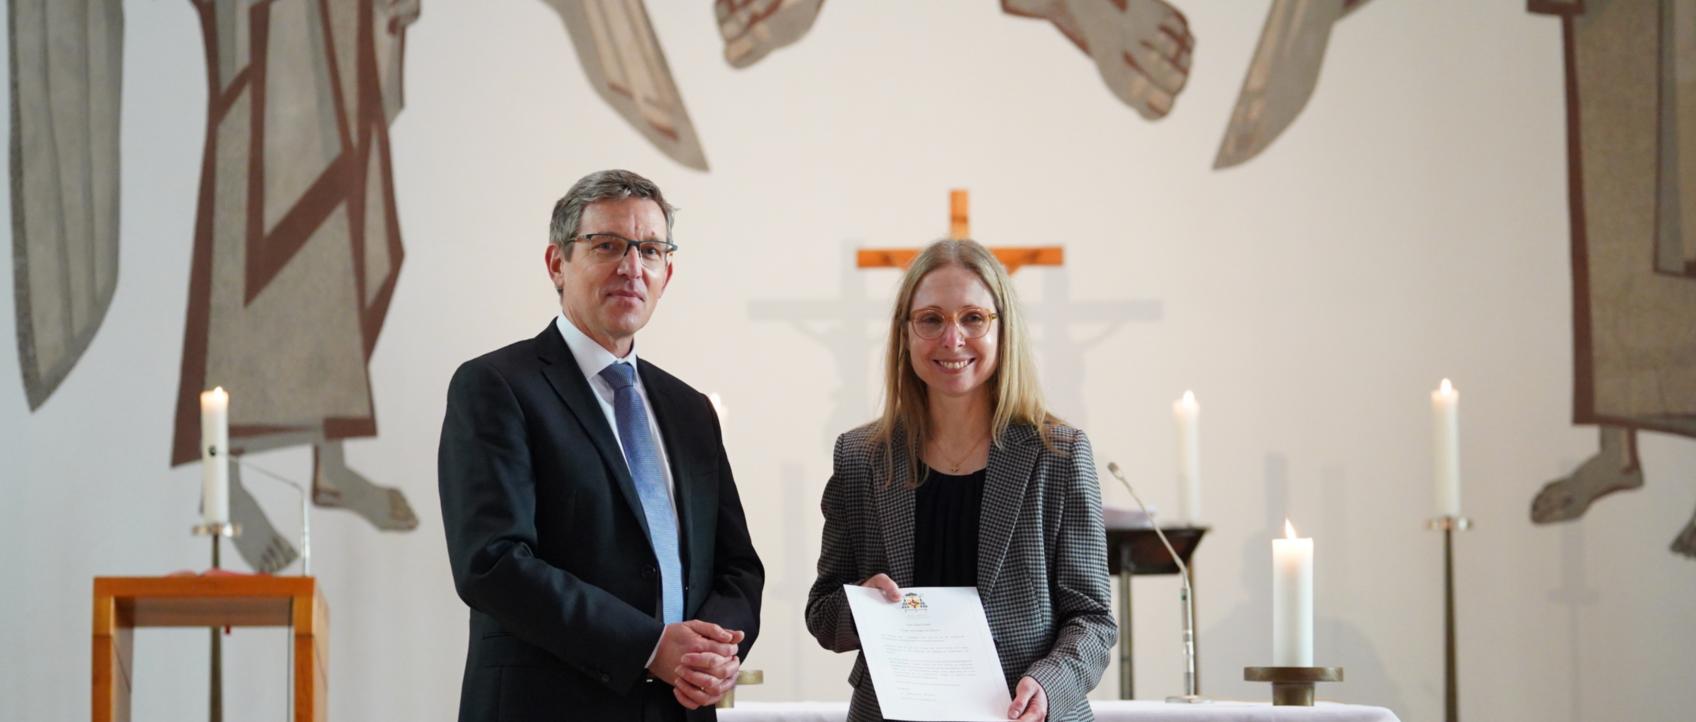 Anja Groth erhält Ernennungsurkunde zur Schulleiterin der Bischöflichen Liebfrauenschule Eschweiler